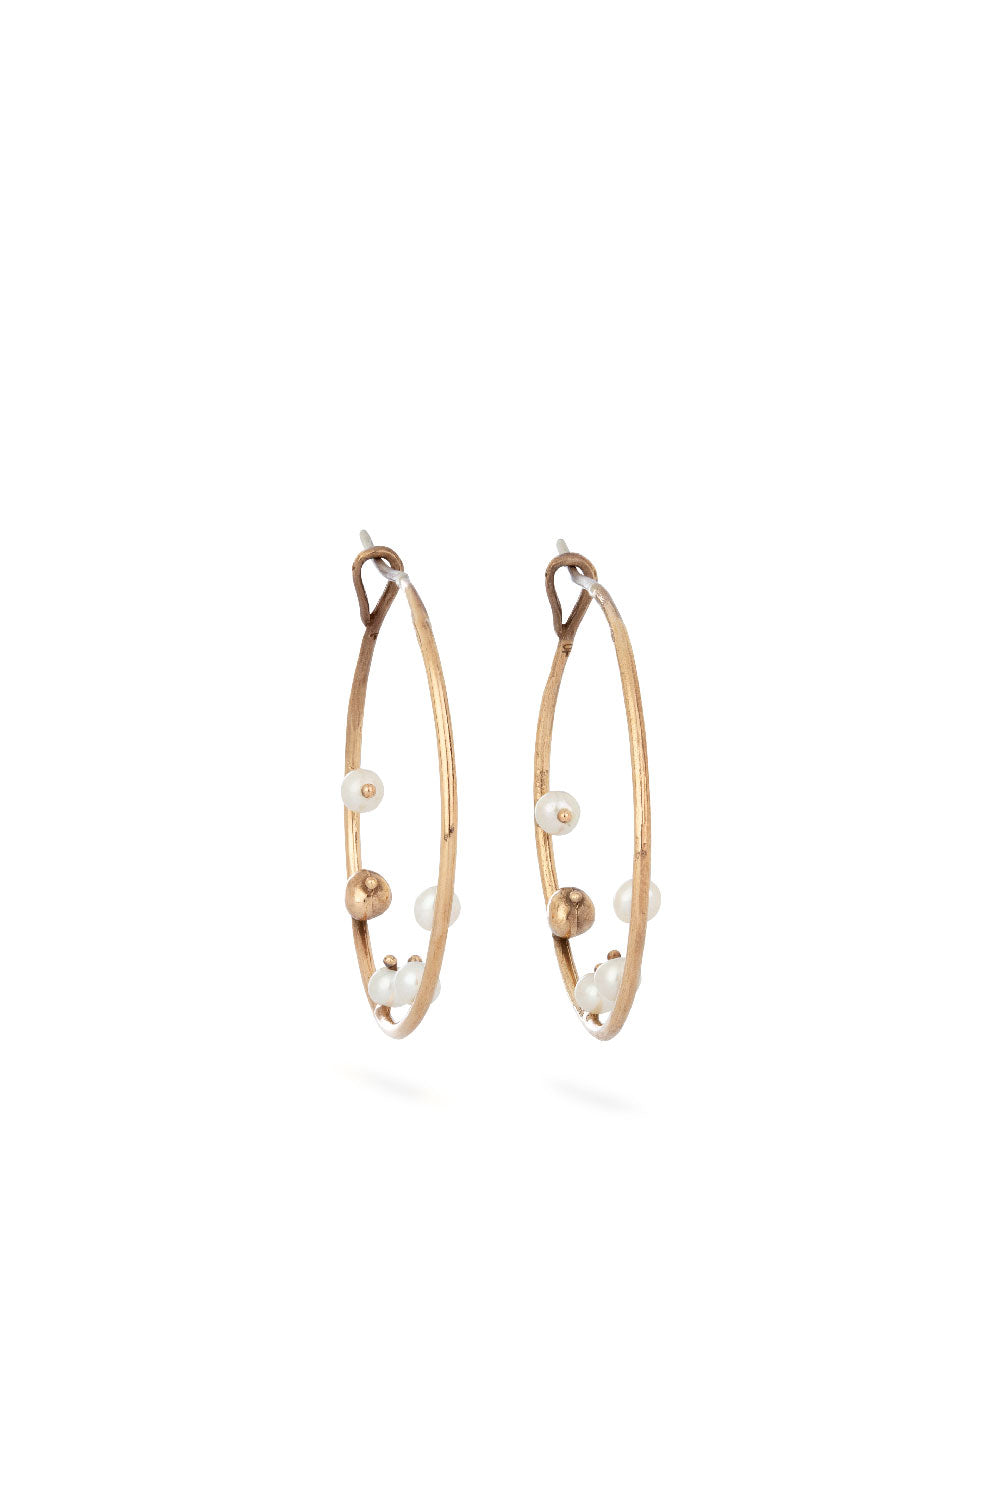 Sea earrings - big bronze hoops with pearls